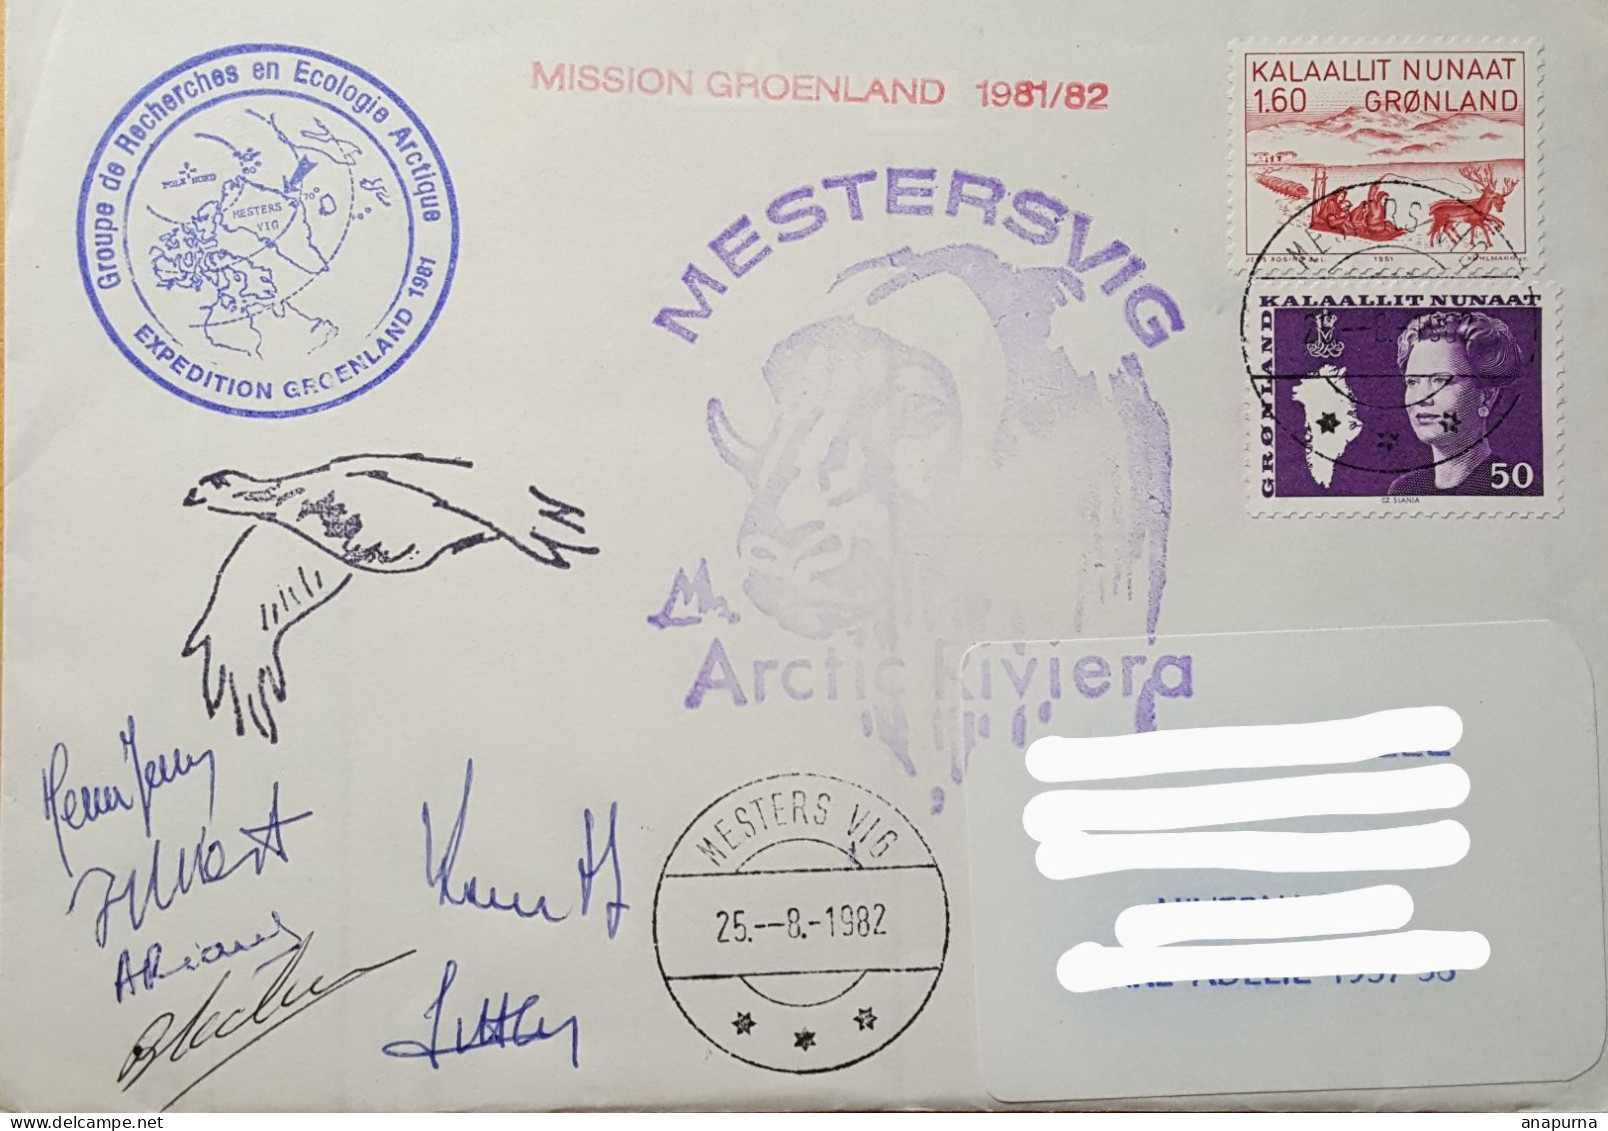 Pli Groenland. Expédition Du Groupe Recherche Ecologie Arctique 81/82. Mestersvig Arctic Riviera. 6 Signatures. - Programmes Scientifiques